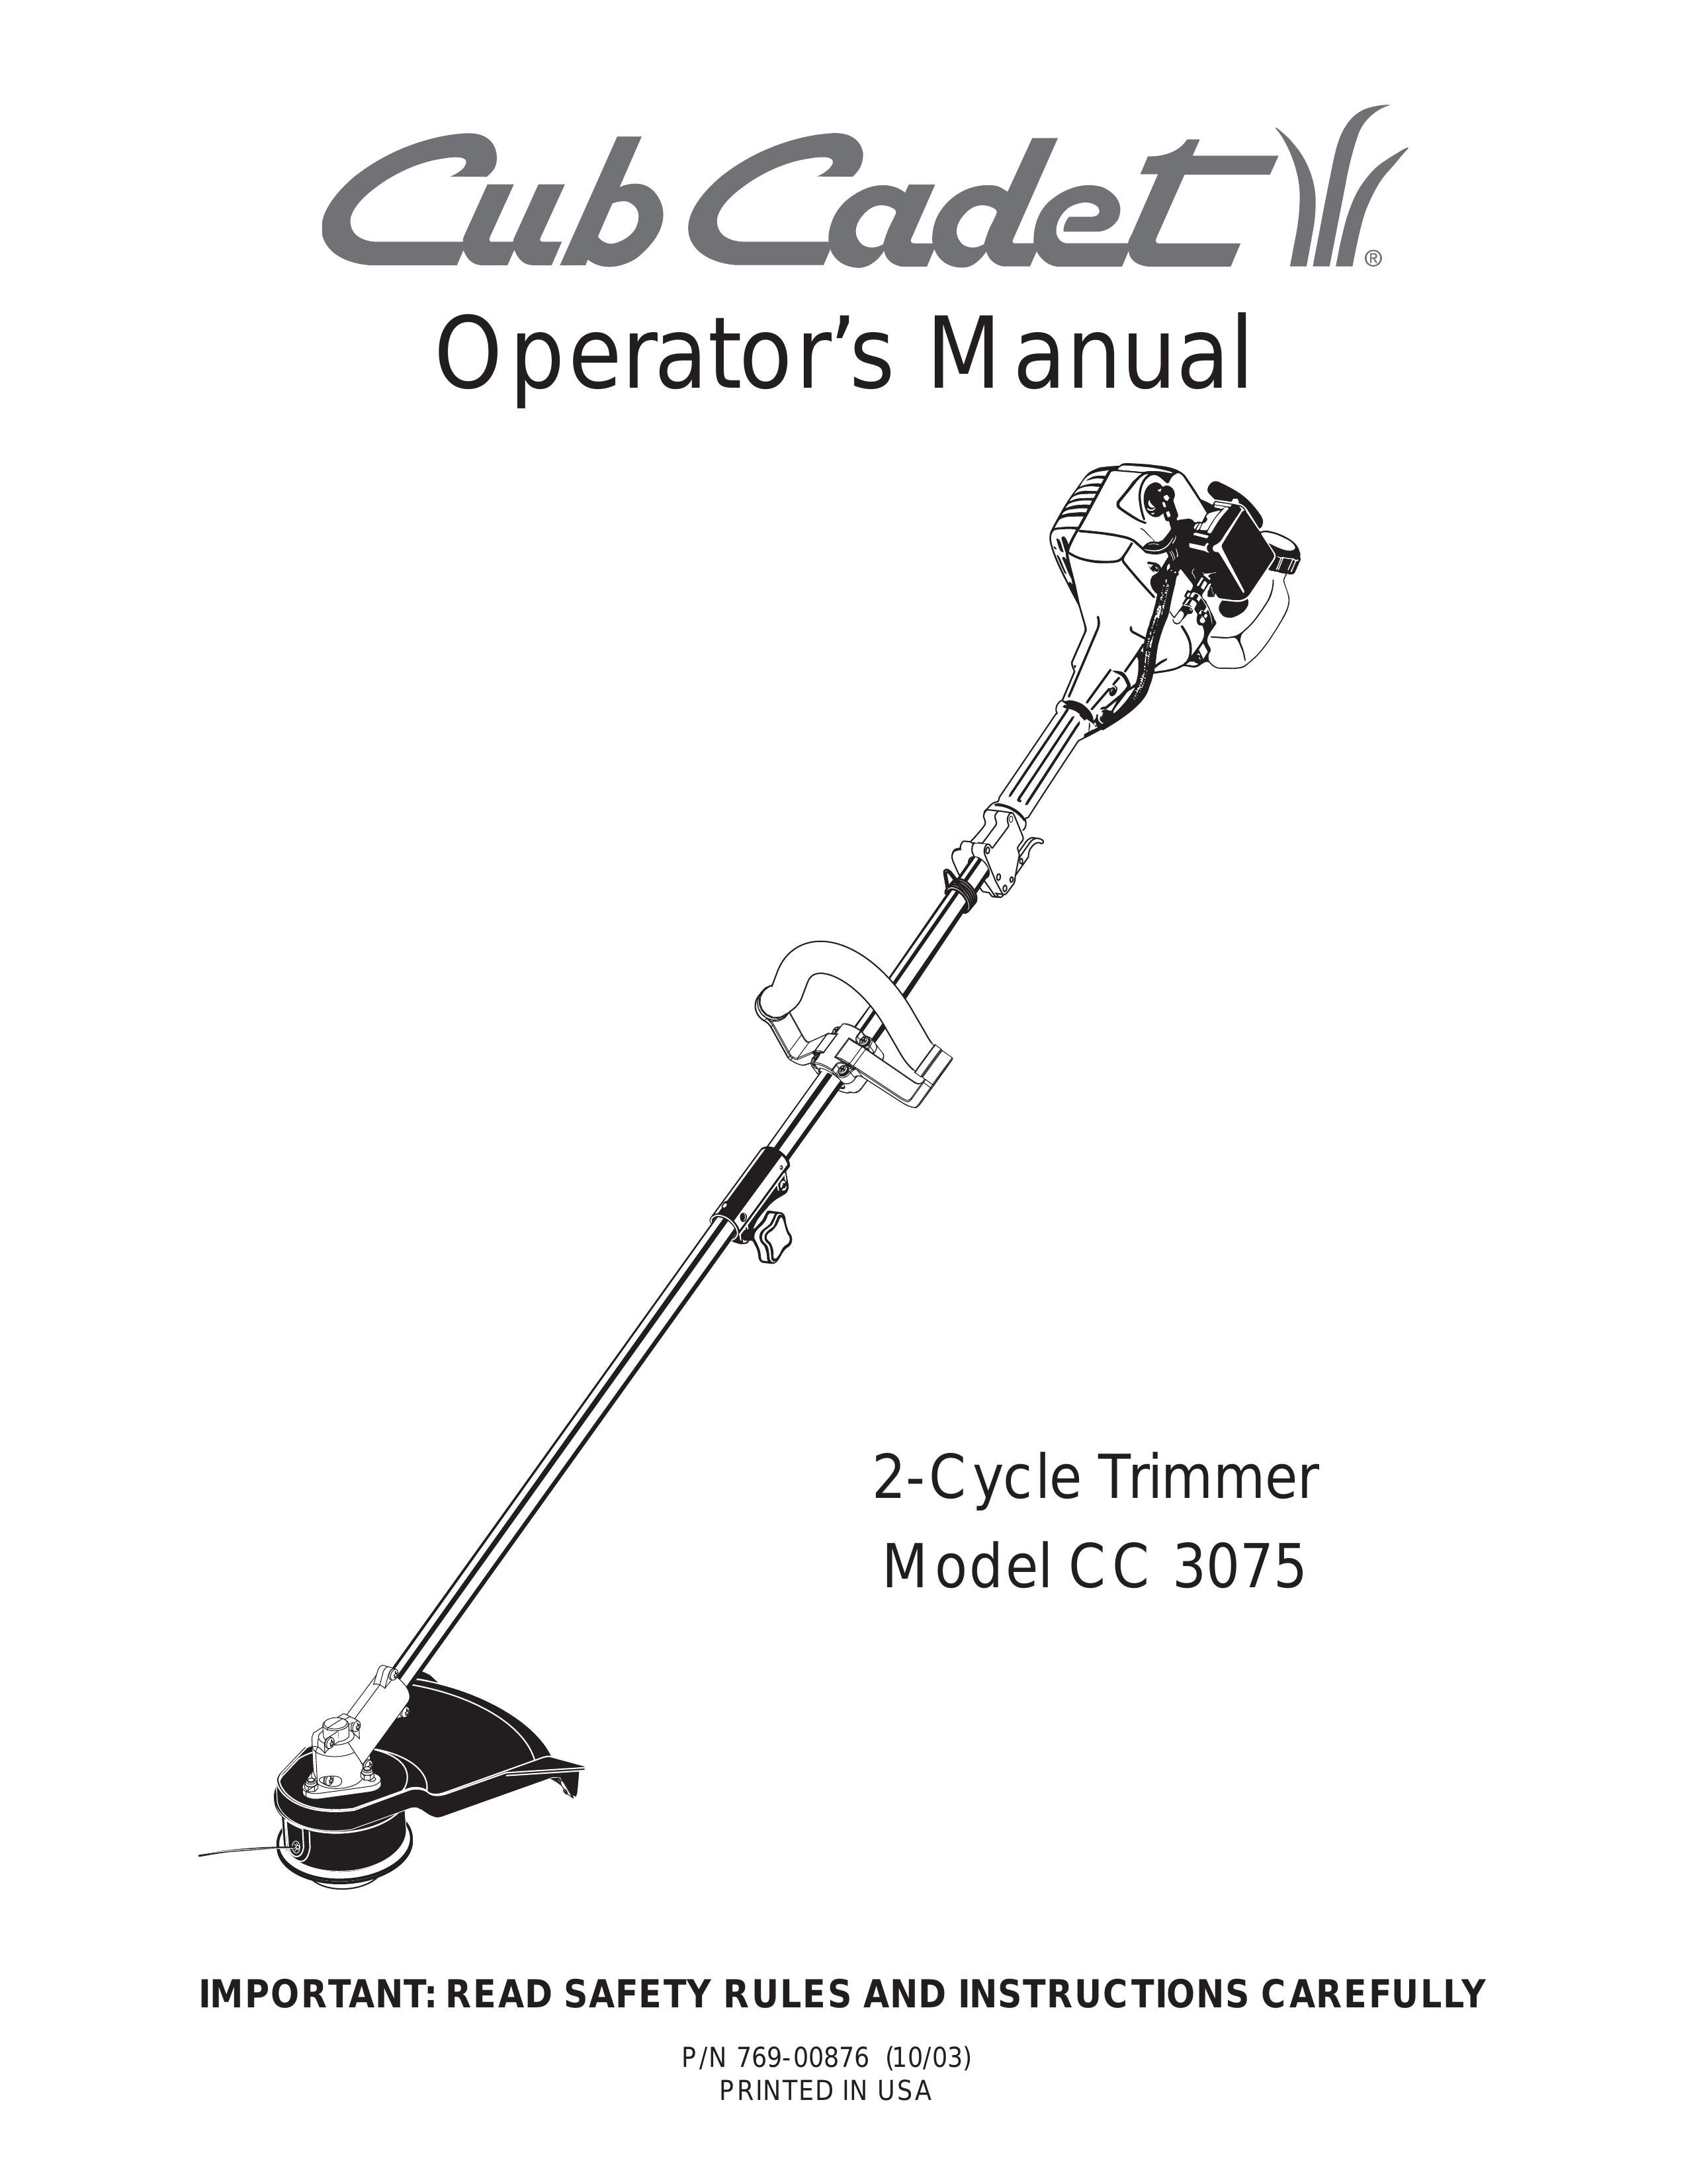 Cub Cadet CC3075 Trimmer User Manual